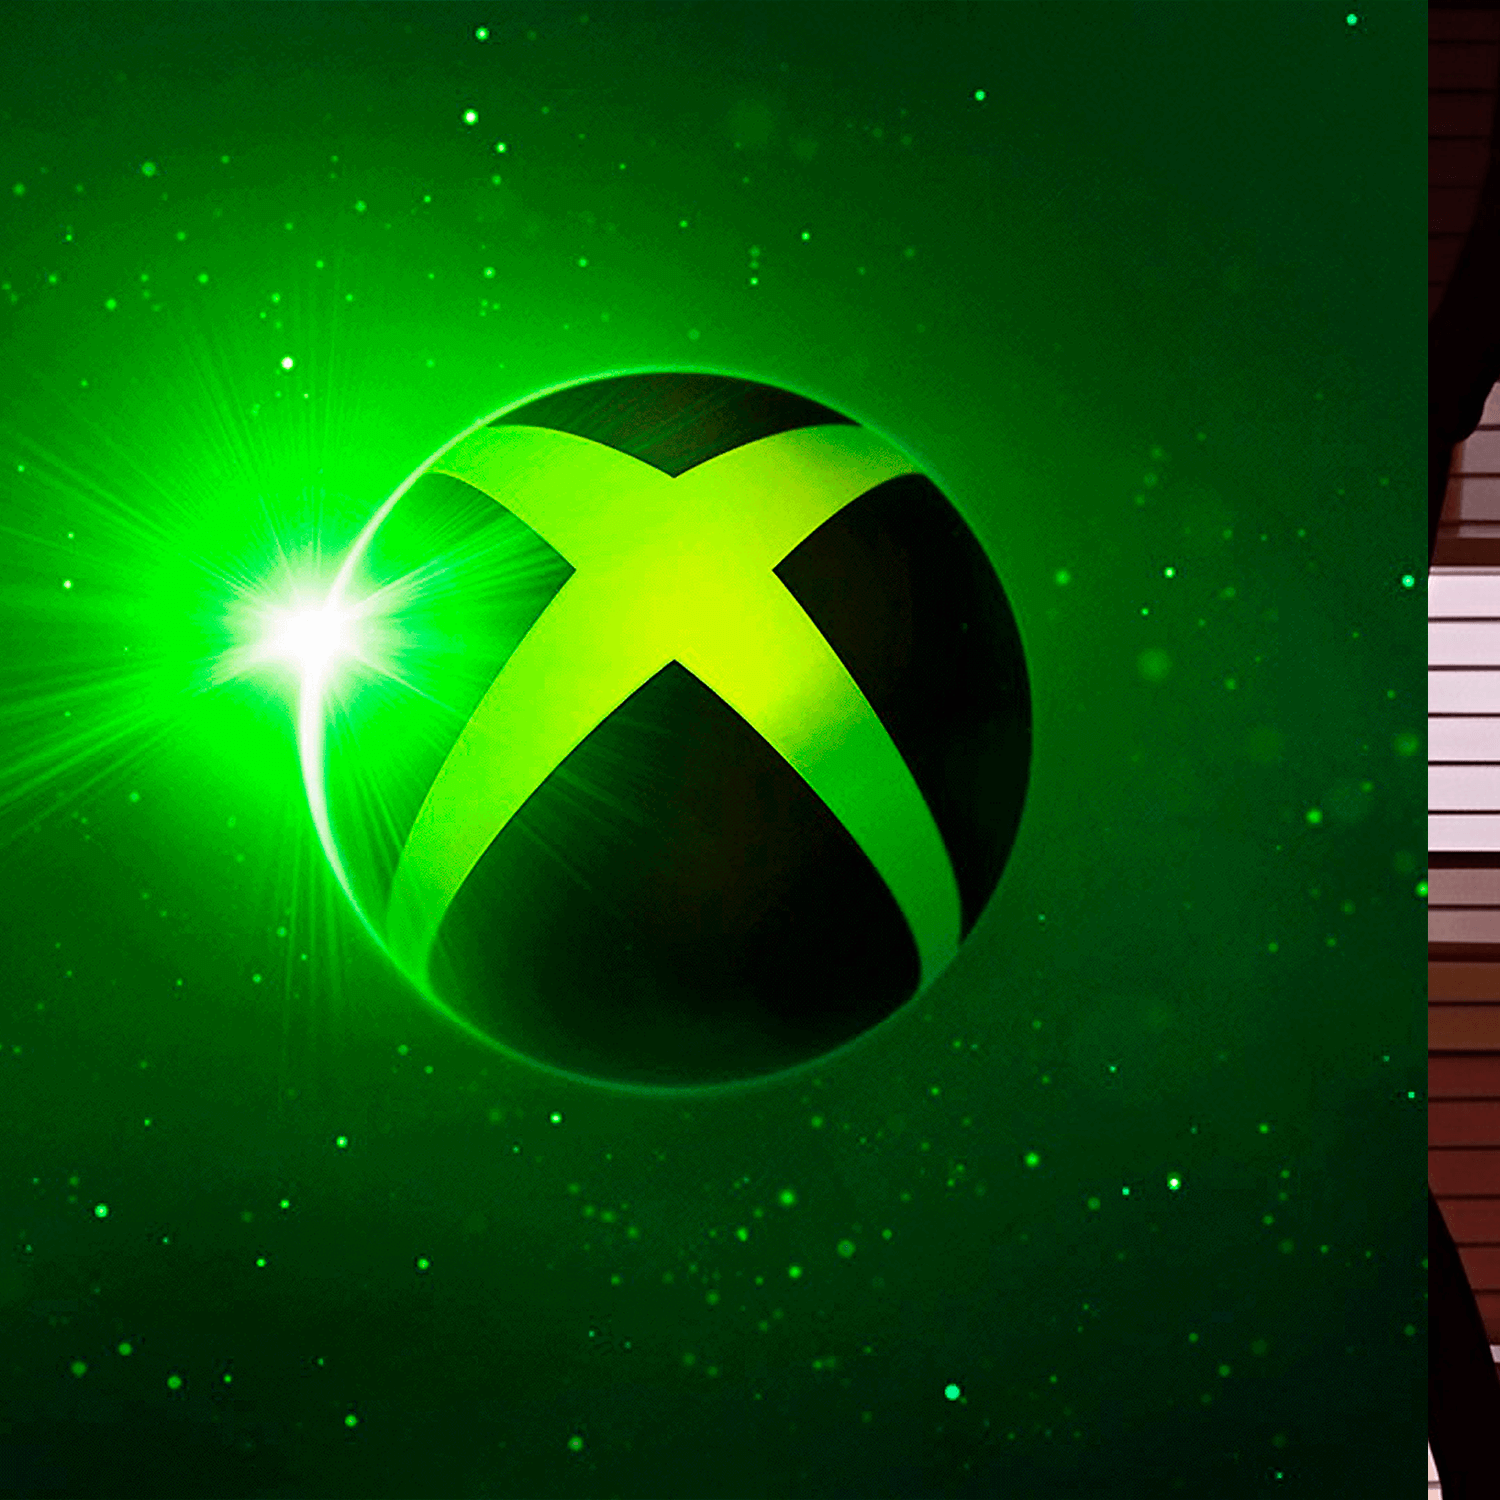 ¡Xbox Showcase próximamante el 9 de junio!